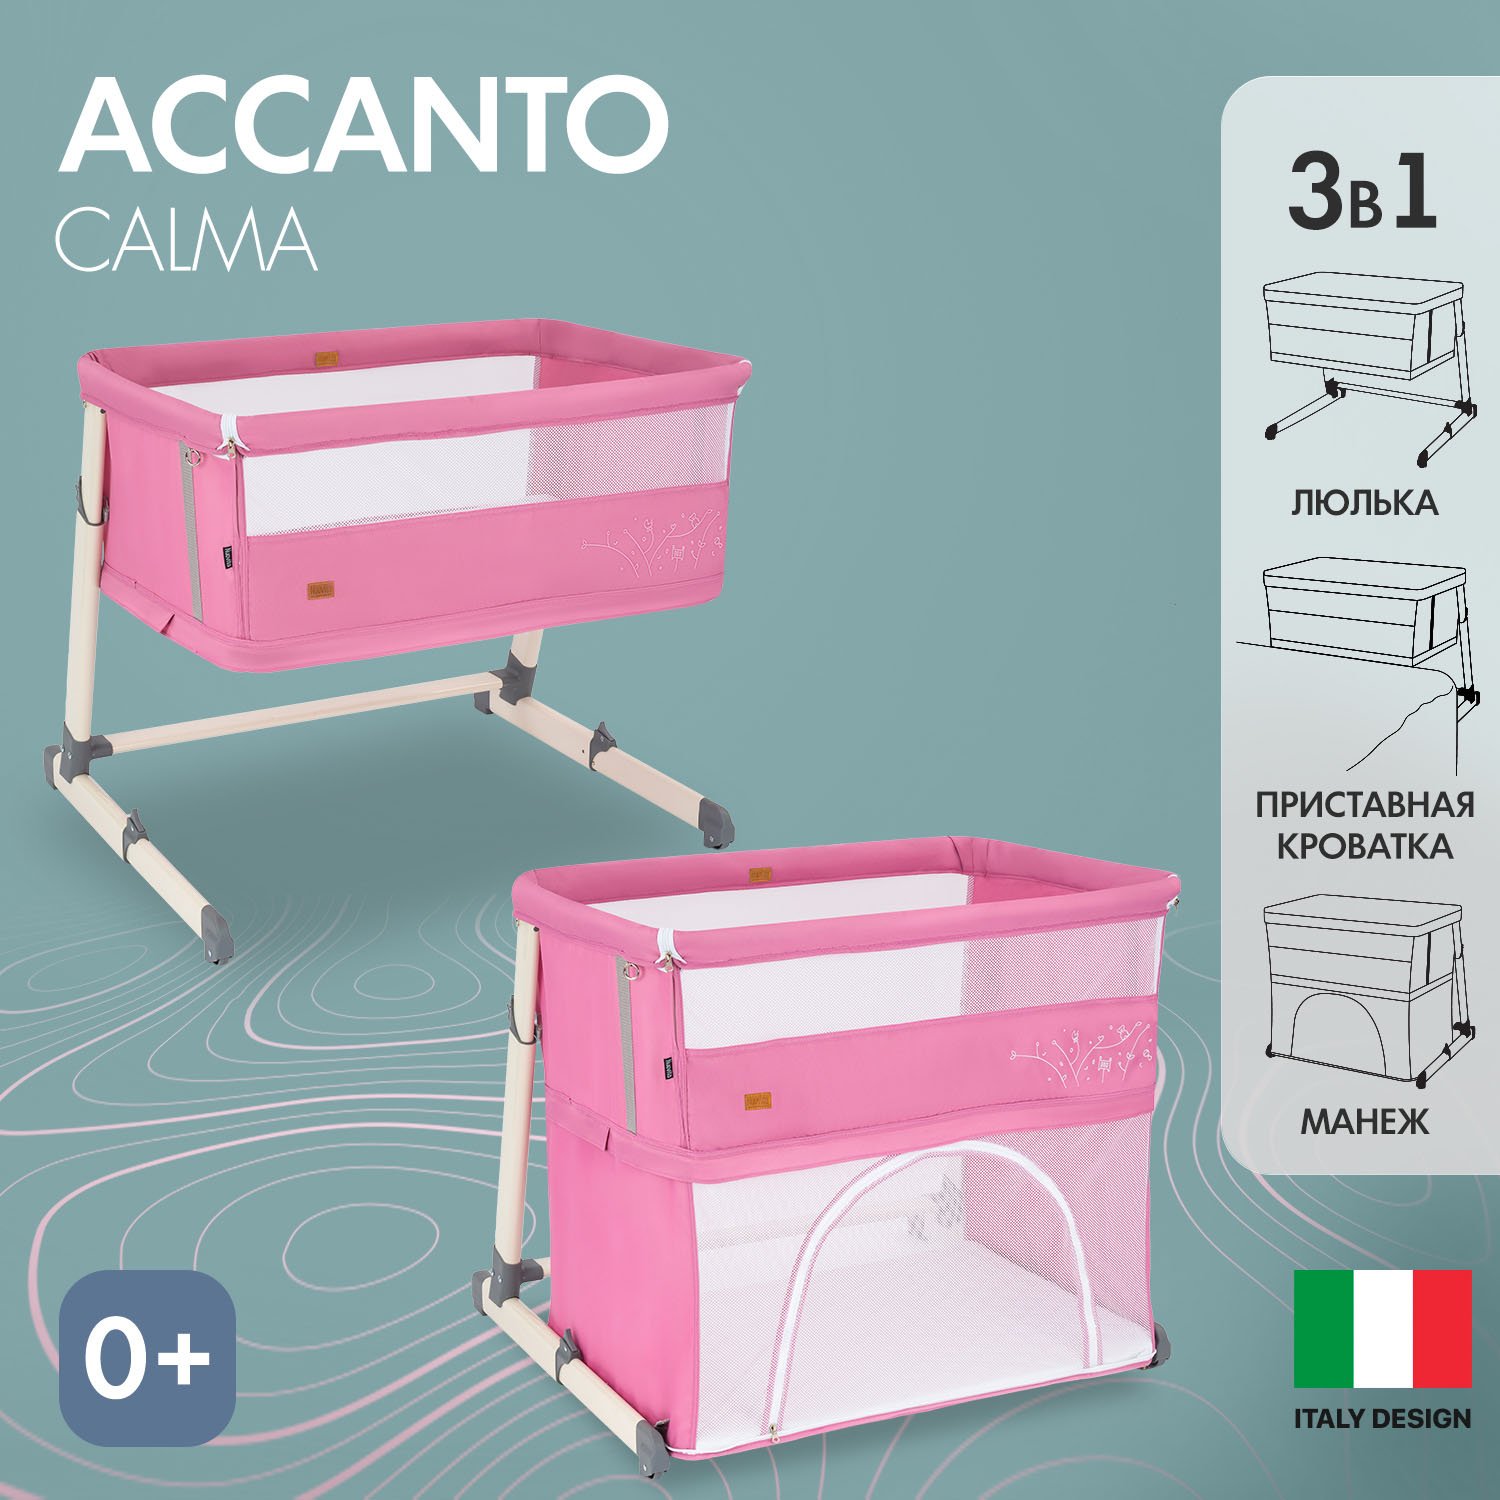 Детская приставная кроватка Nuovita Accanto Calma (Rosa/Розовый) шезлонг с механической функцией качения nuovita mellare m1 серо розовый круг